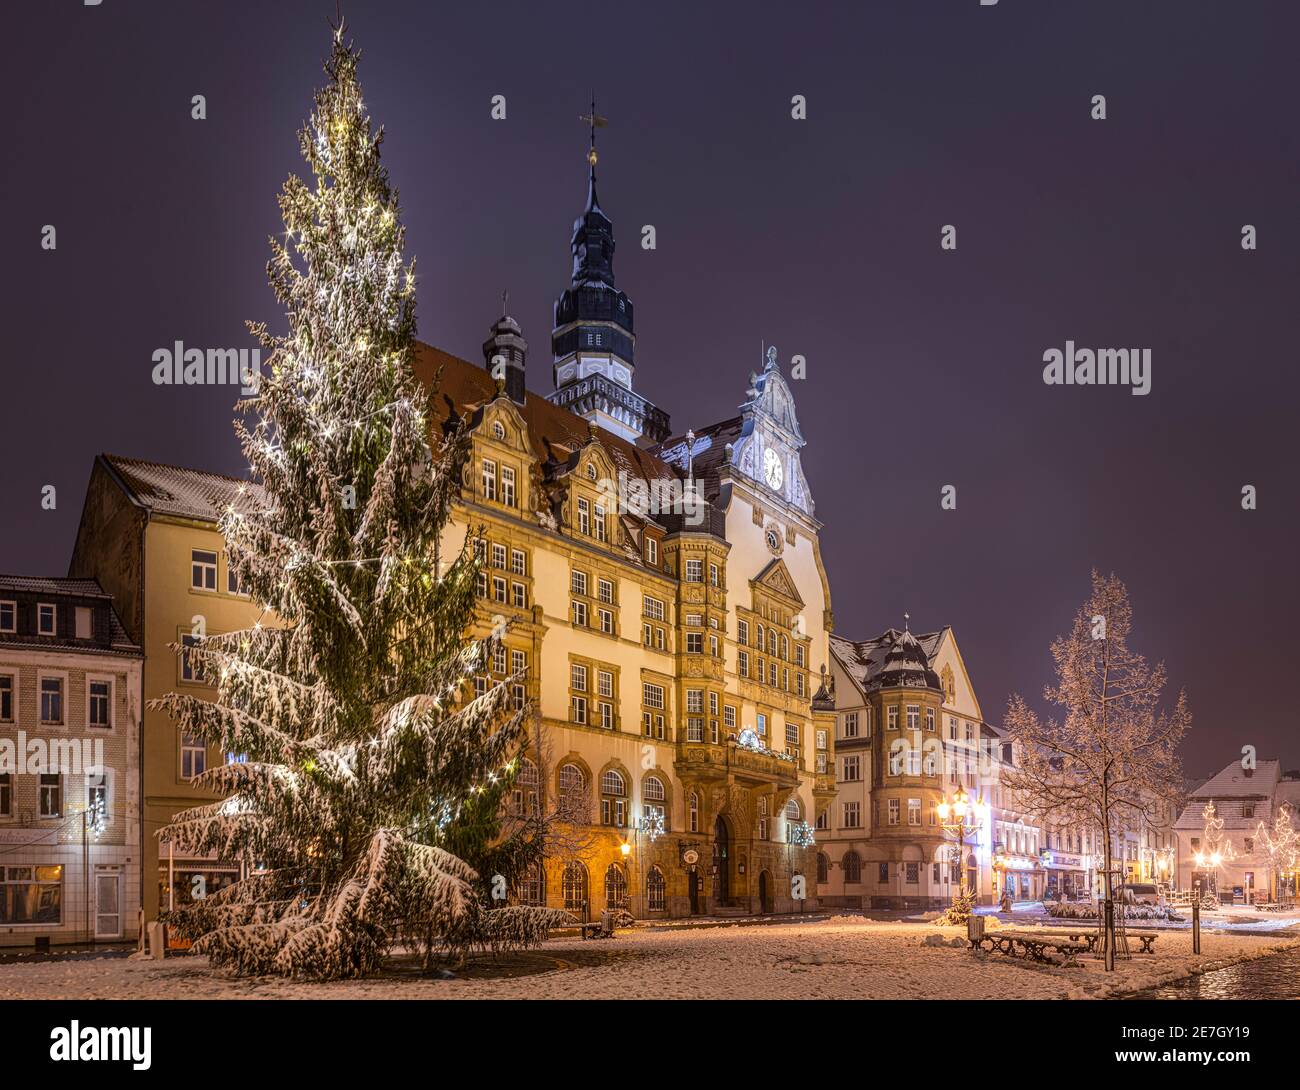 Werdau zur Weihnachtszeit mit Weihnachtsbaum im Schnee, Rathaus und Markt, Sachsen Stock Photo